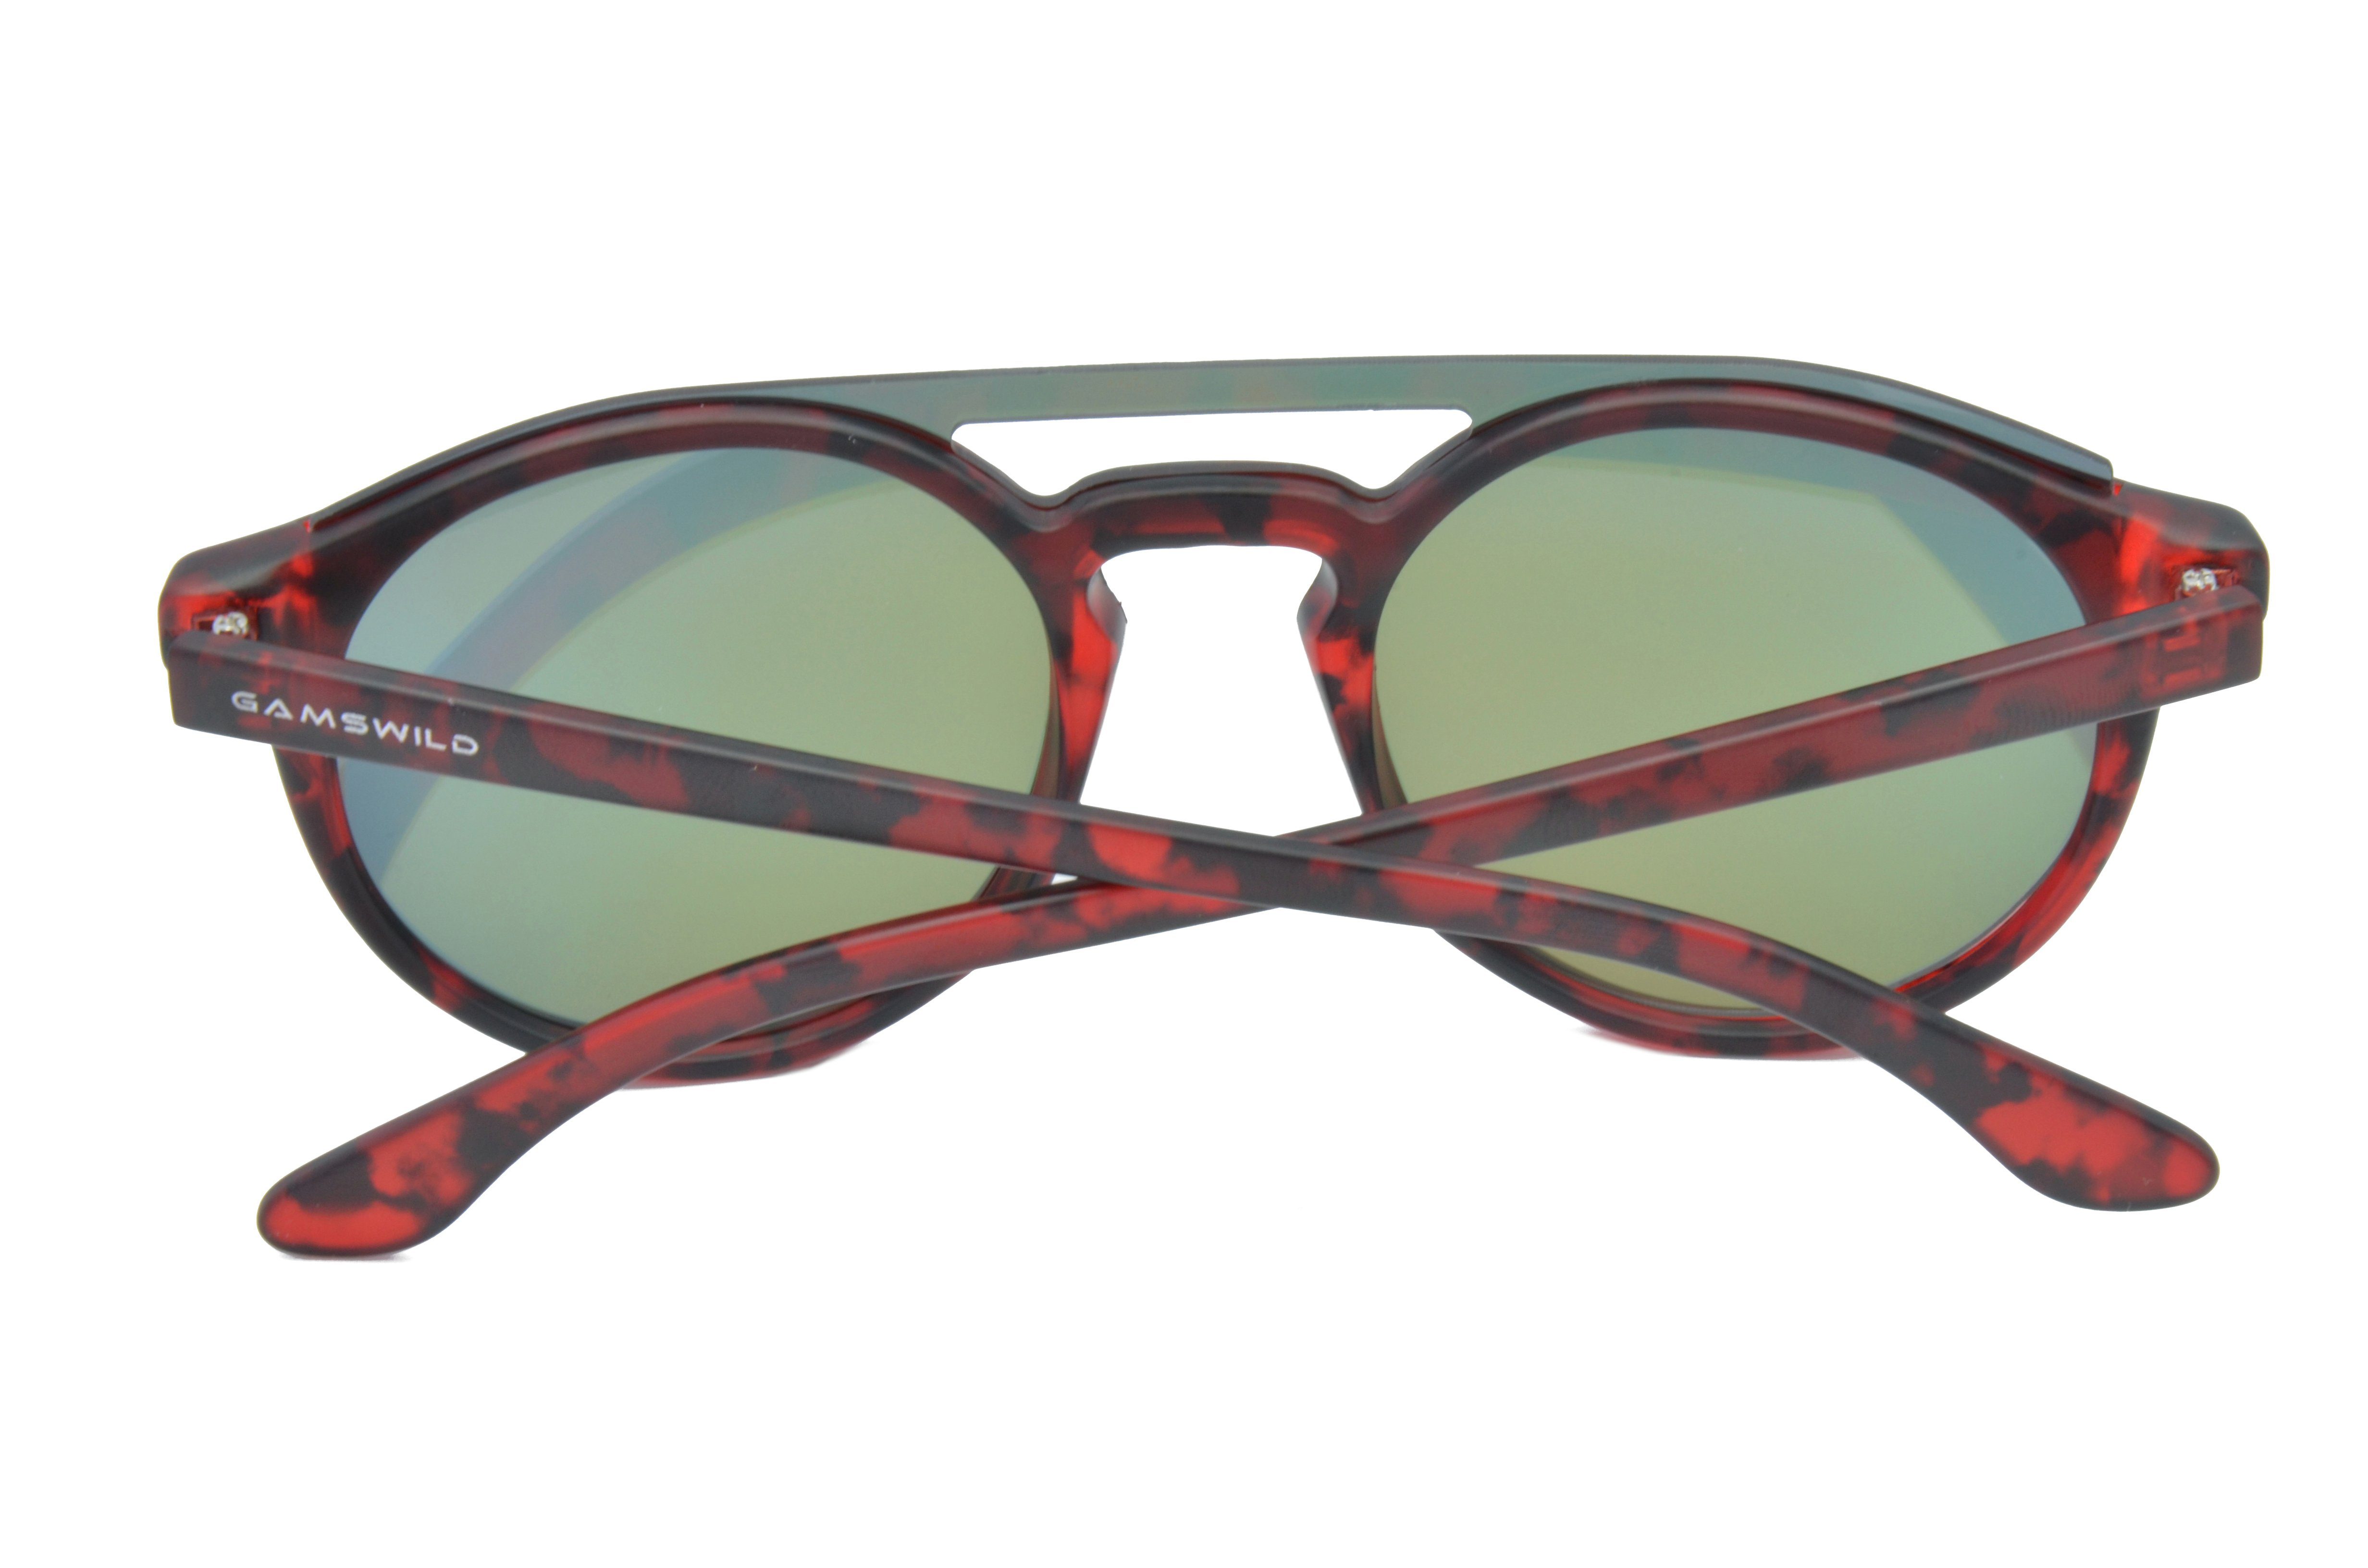 Gamswild GAMSSTYLE grün, Unisex rot blau, Damen WM1221 Brille Fashionbrille, Sonnenbrille braun Herren Mode grün,